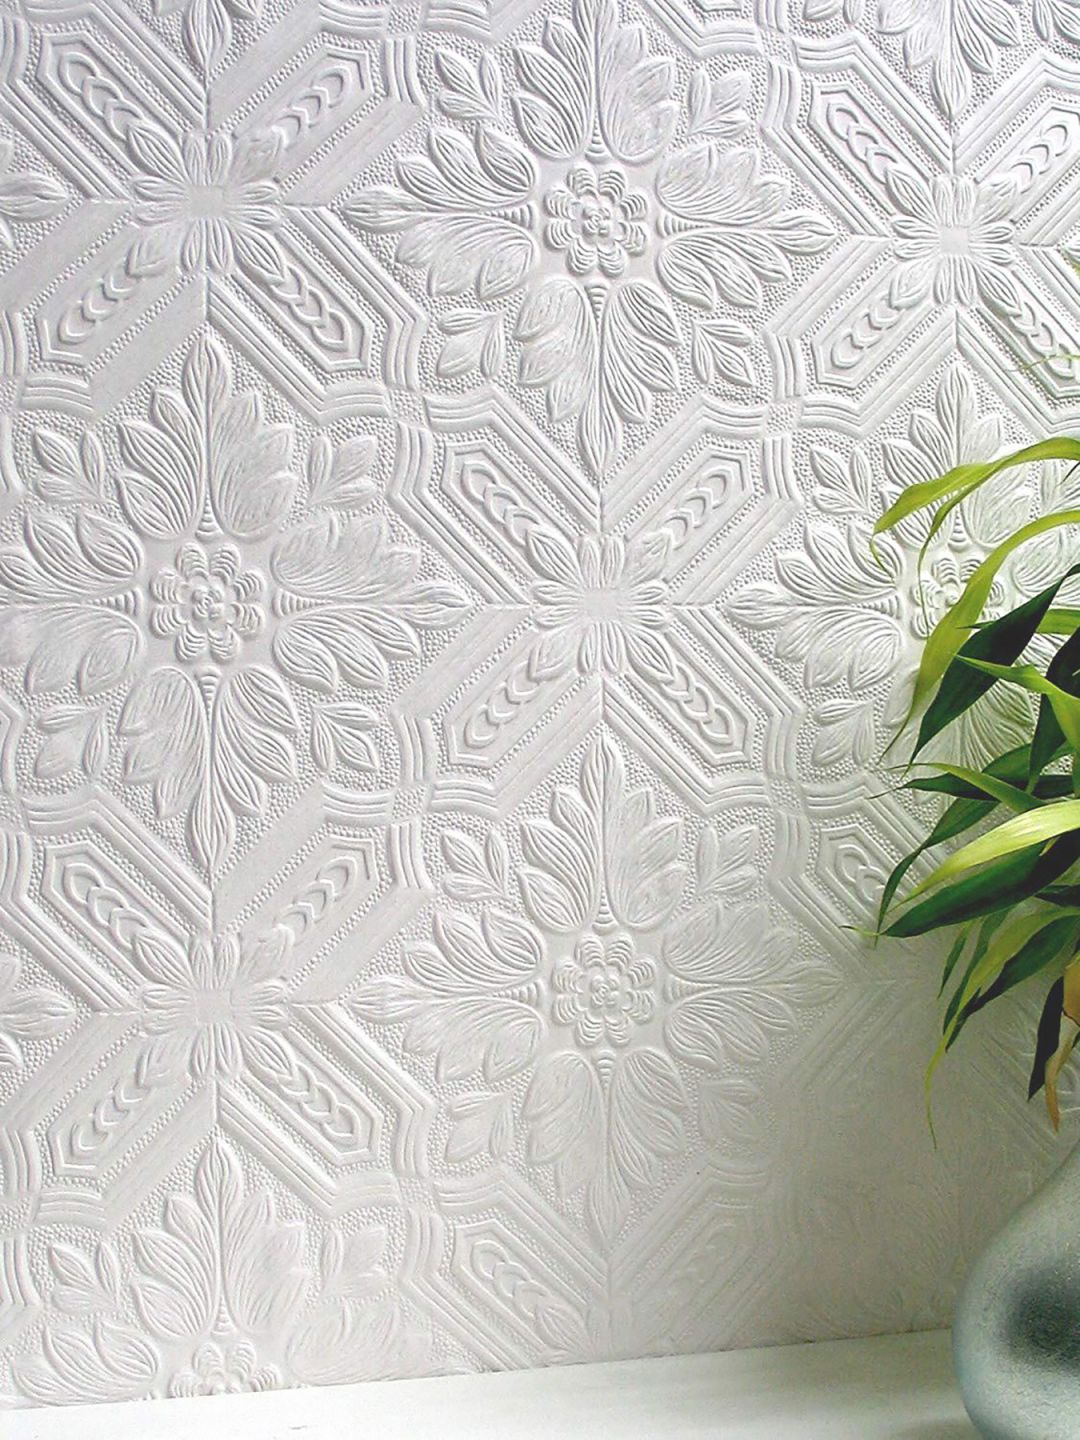 Papel de parede branco com padrão clássico e superfície em relevo, adequada para ser pintada